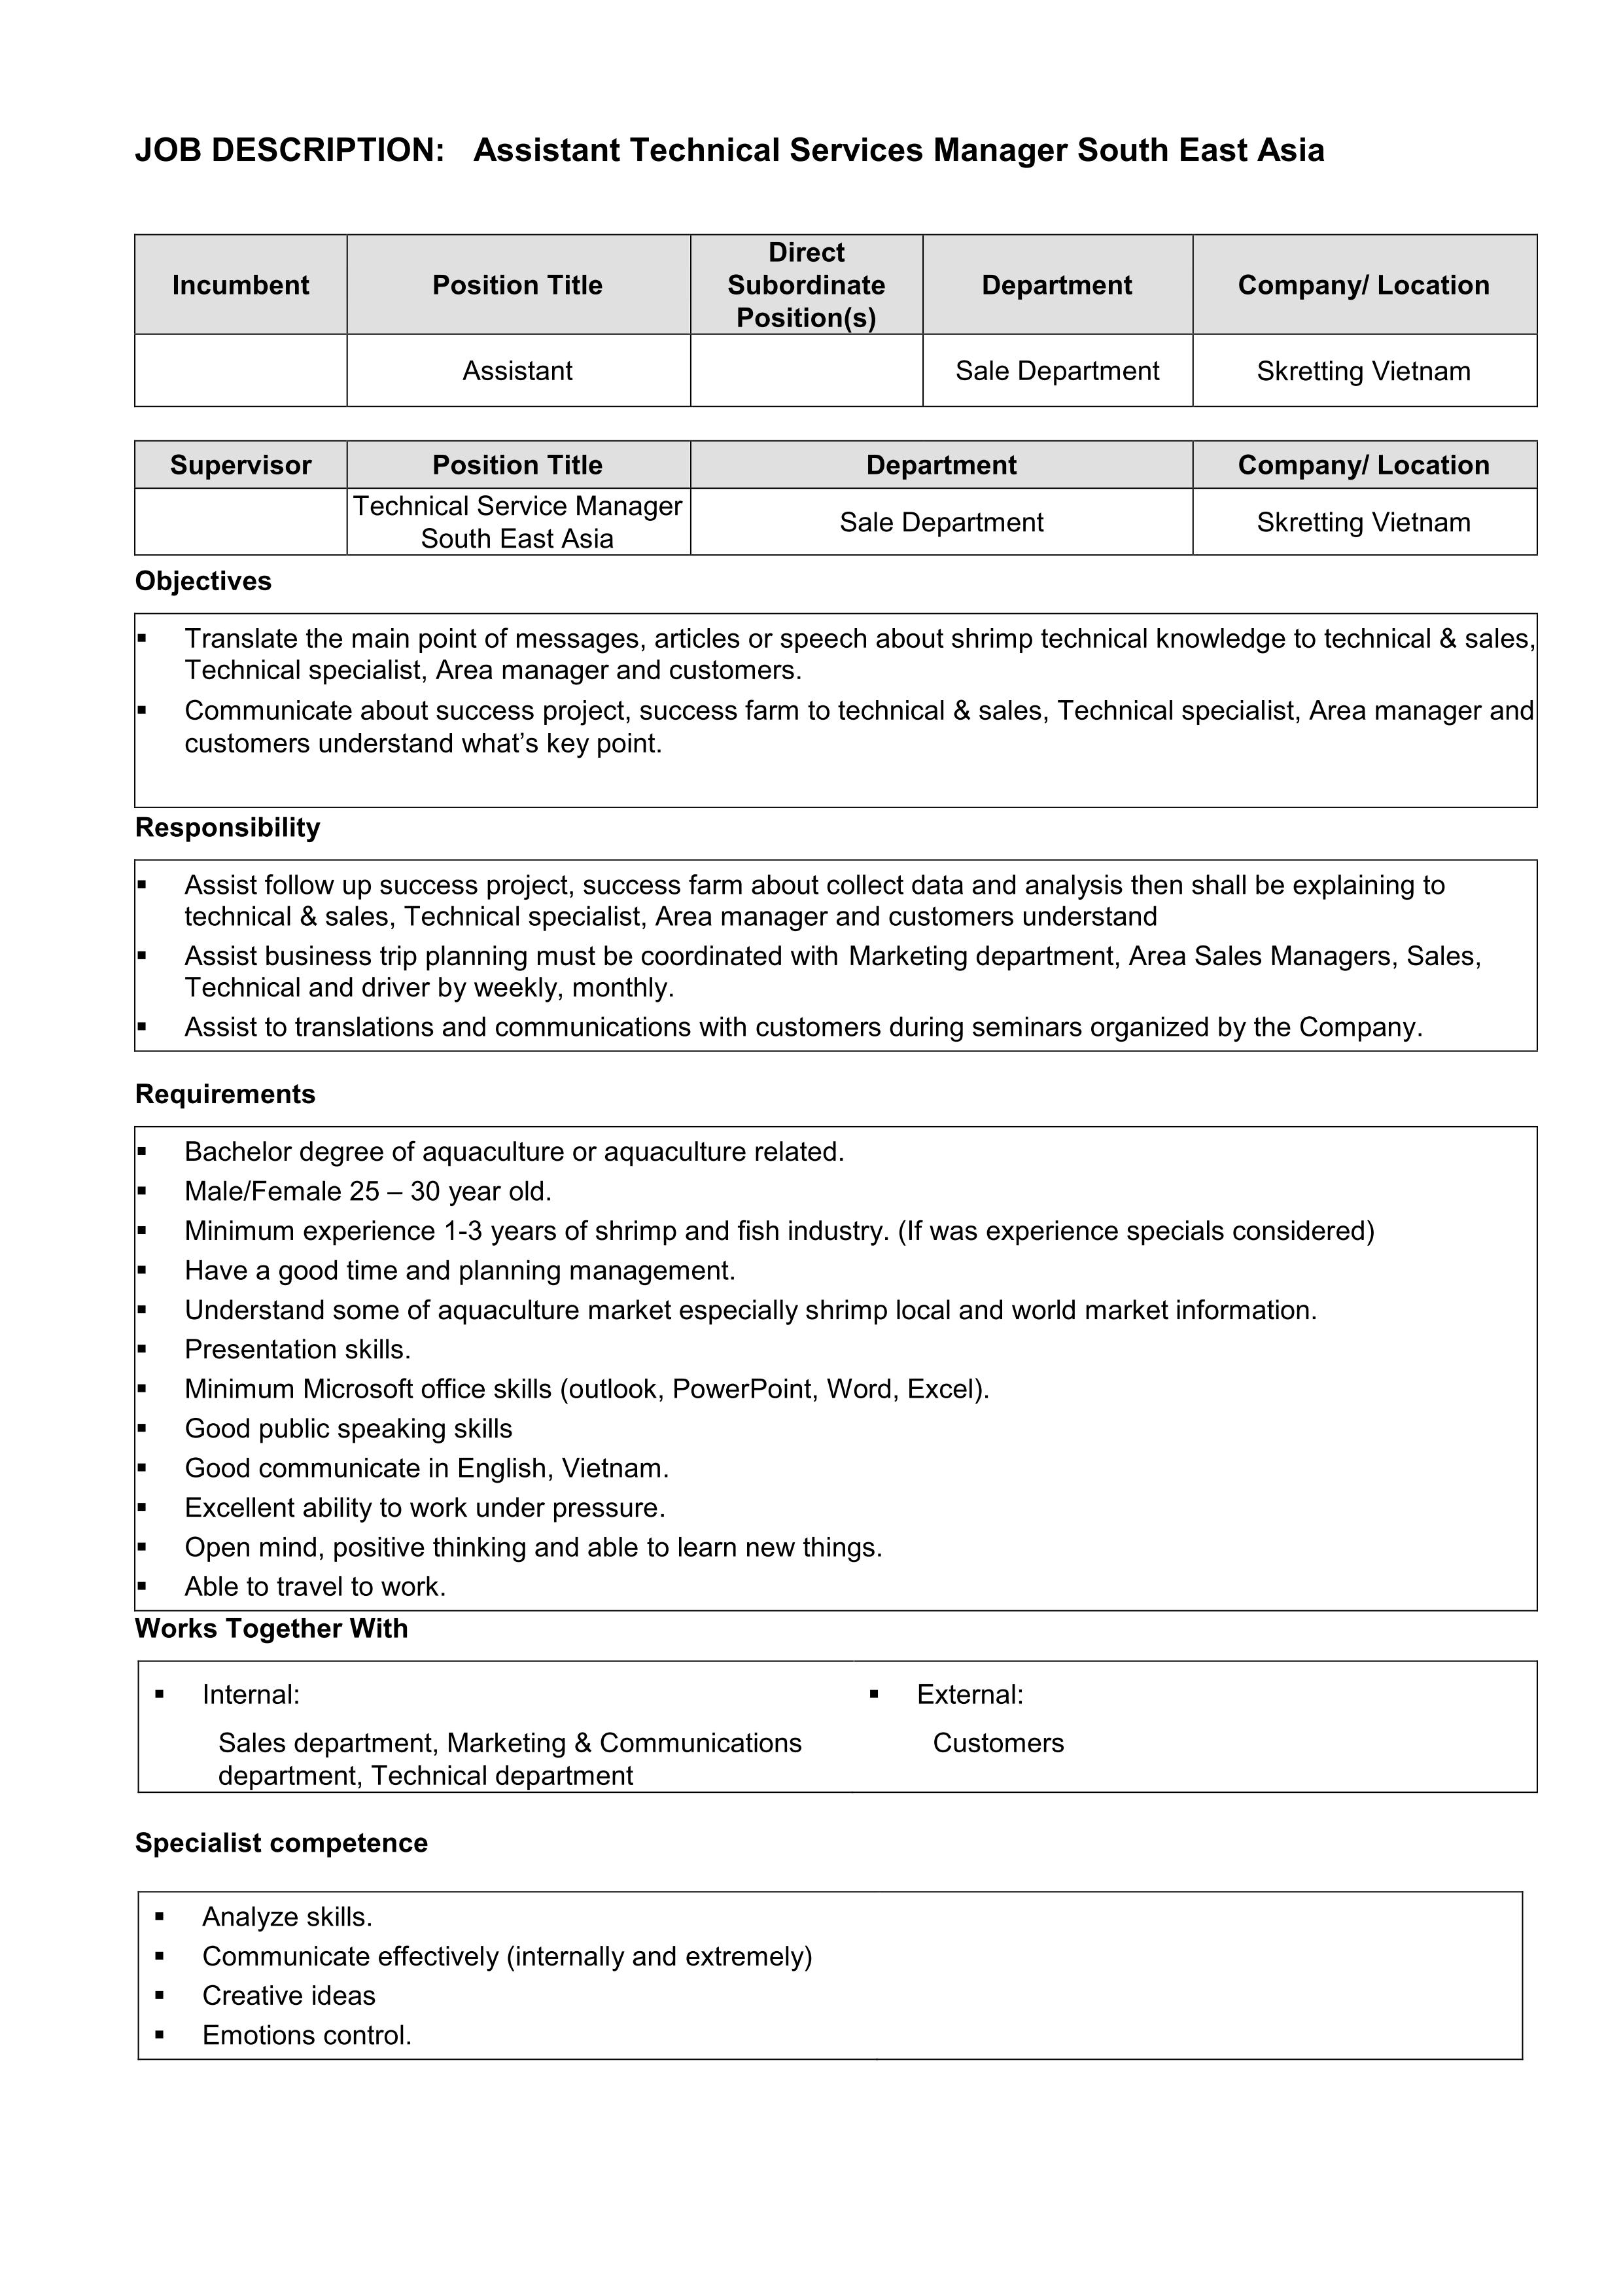 Thông tin tuyển dụng của công ty Skretting Việt Nam